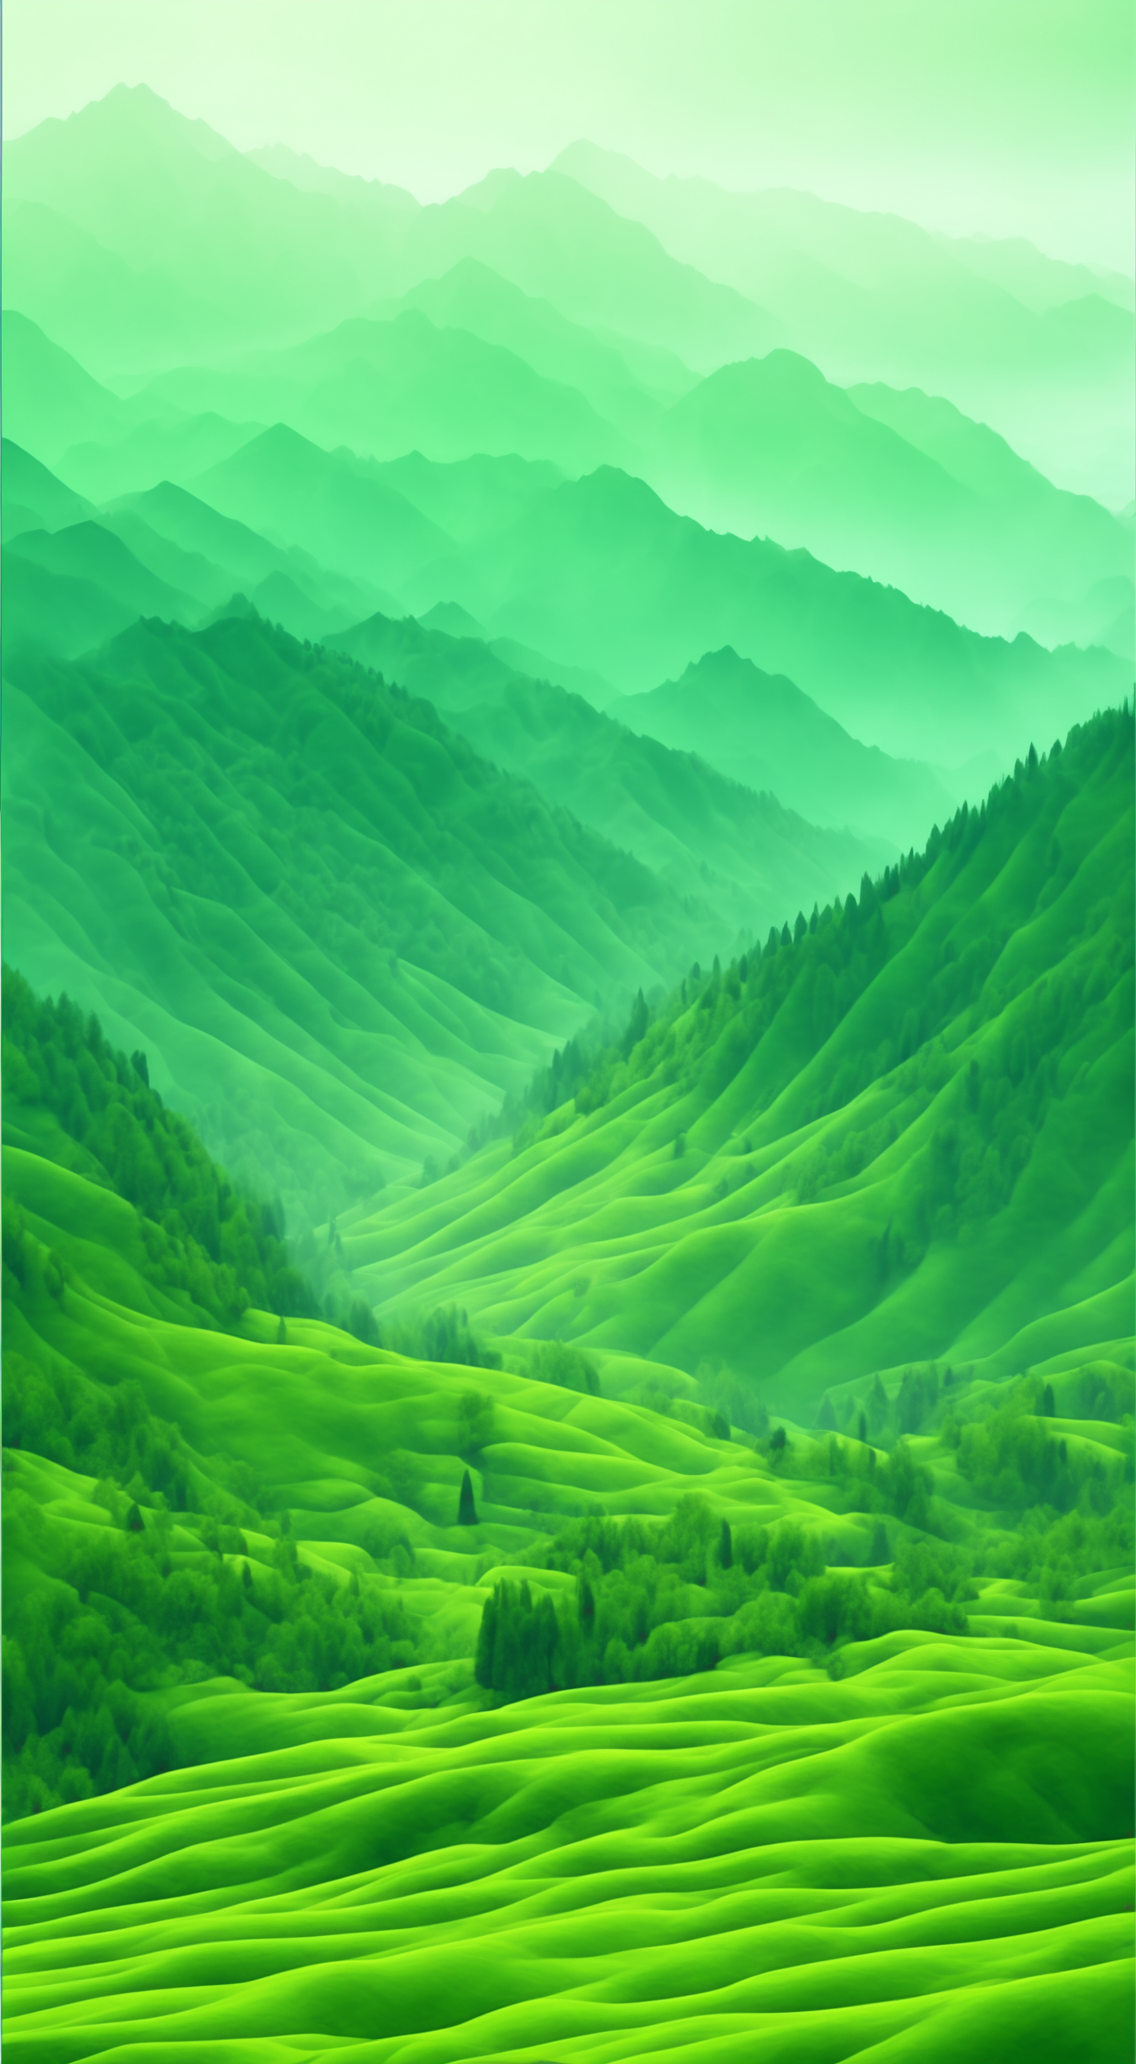 绿水青山